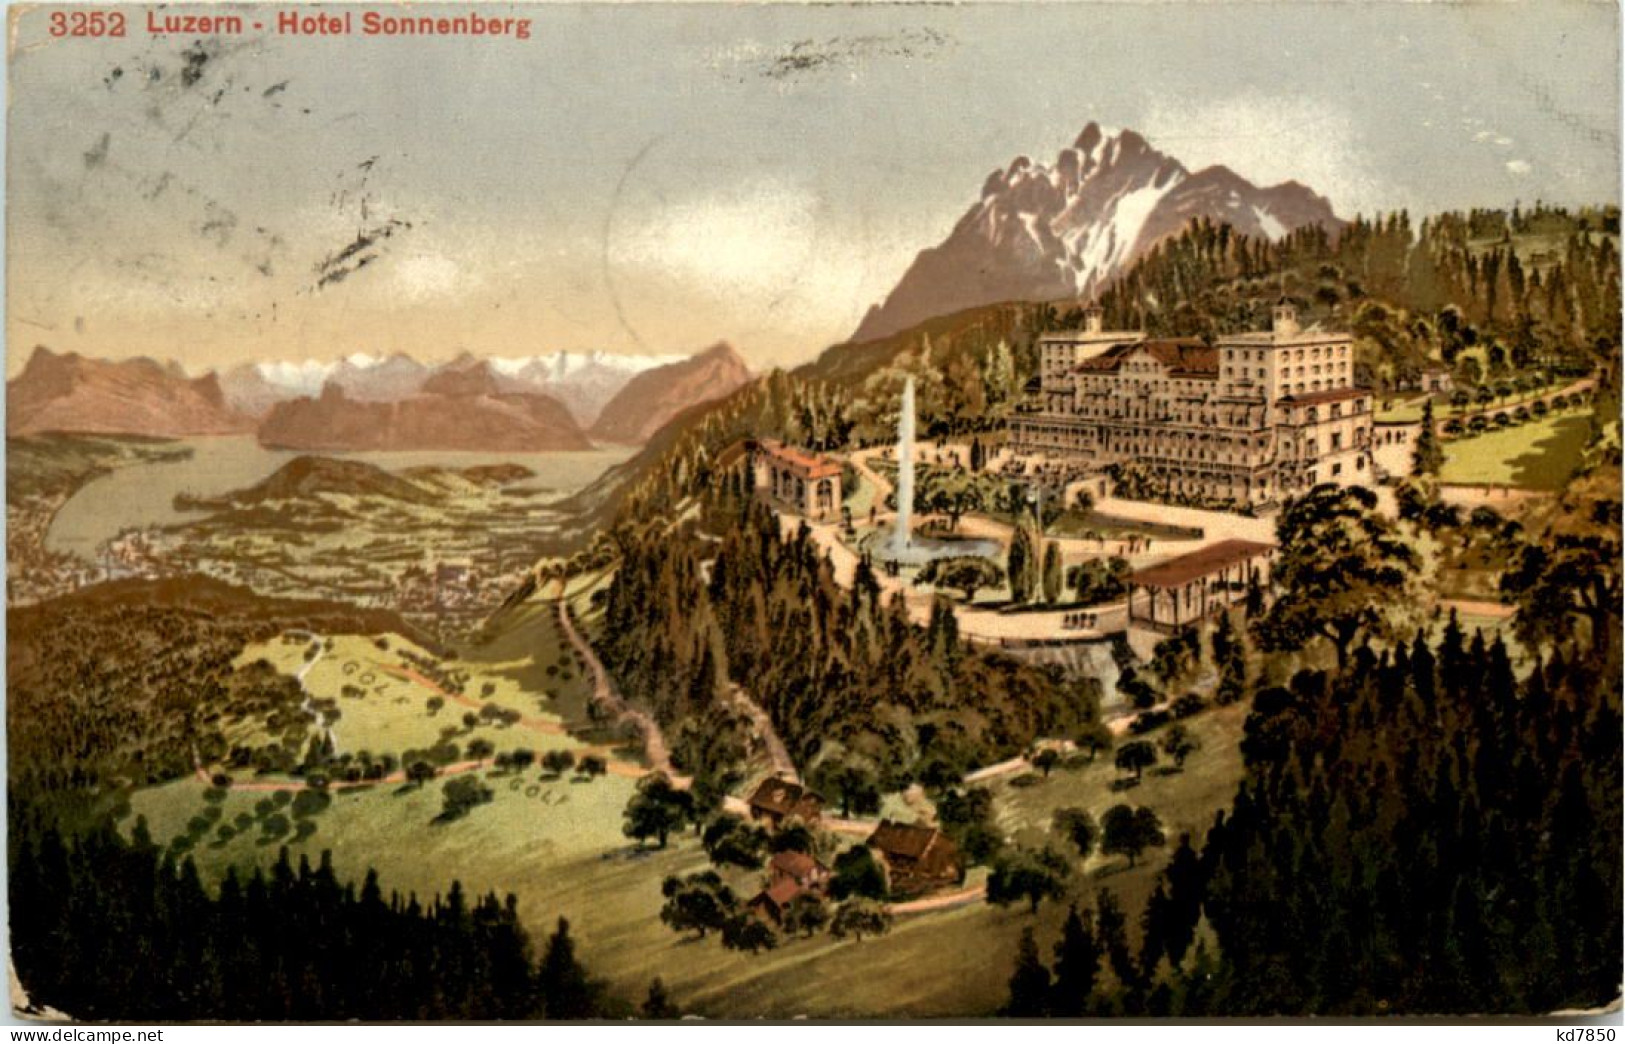 Luzern, Hotel Sonnenberg - Luzern